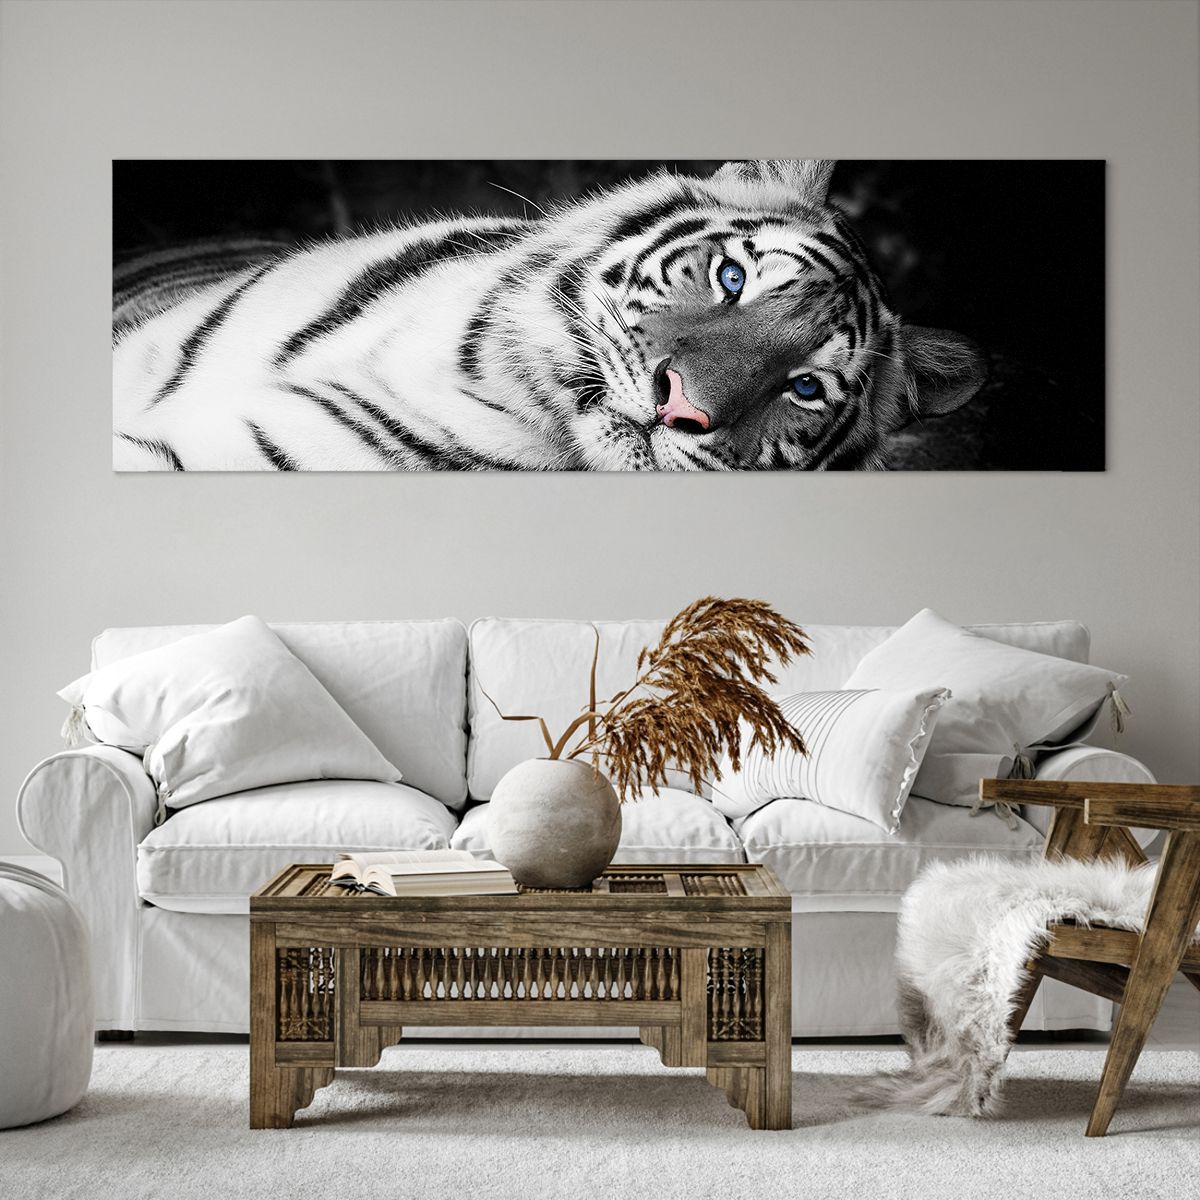 Obrazy na płótnie Tygrys Biały, Obrazy na płótnie Tygrys, Obrazy na płótnie Zwierzęta, Obrazy na płótnie Natura, Obrazy na płótnie Czarno-Biały